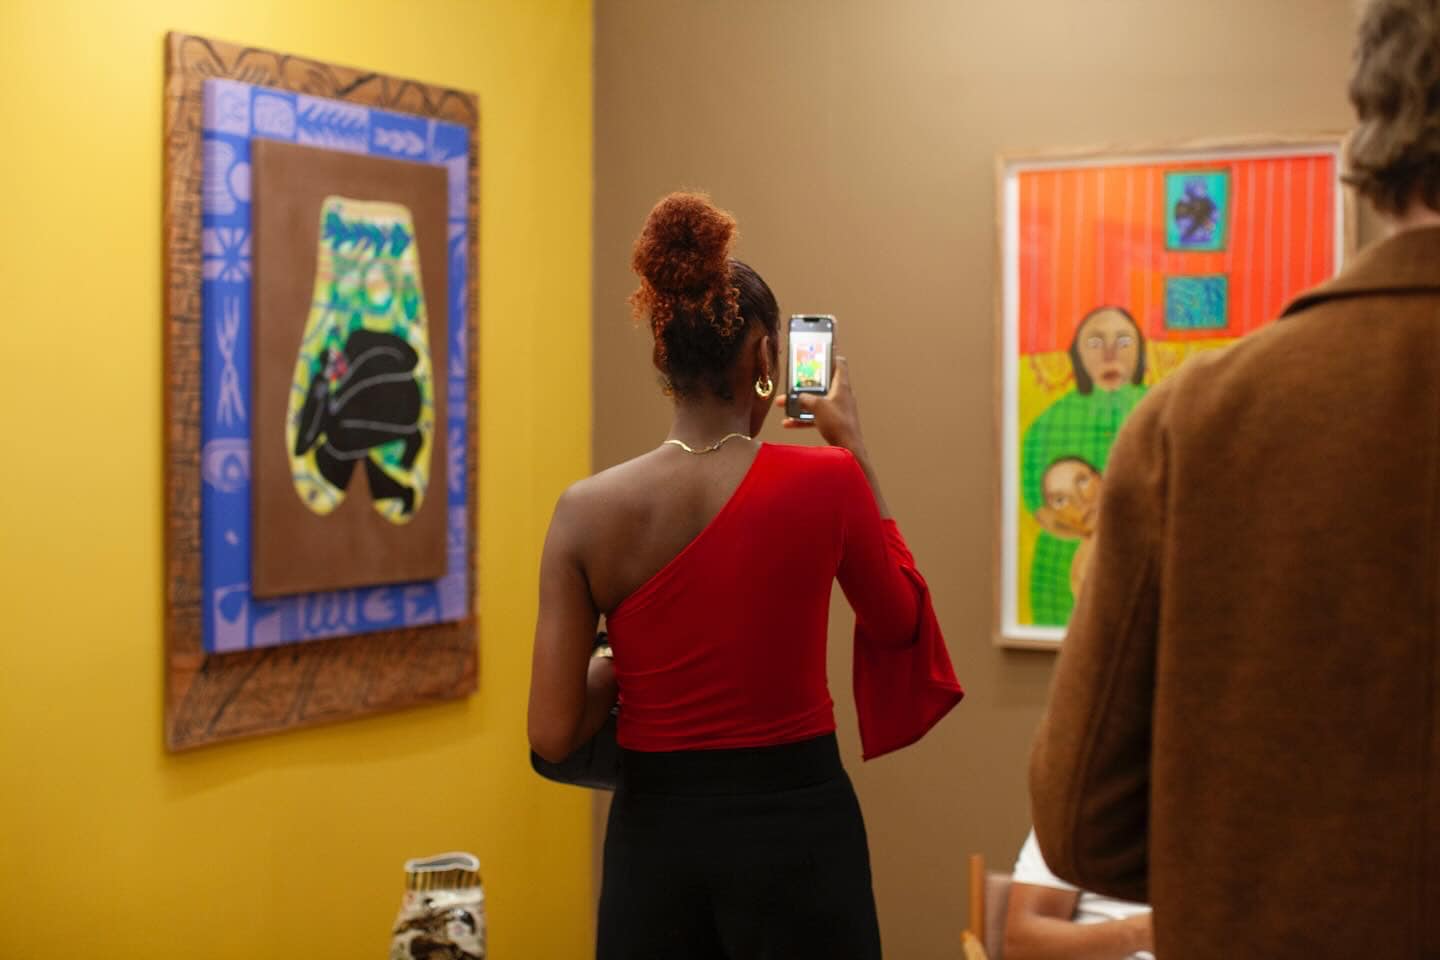 A woman takes a photo of an artwork at an art fair.